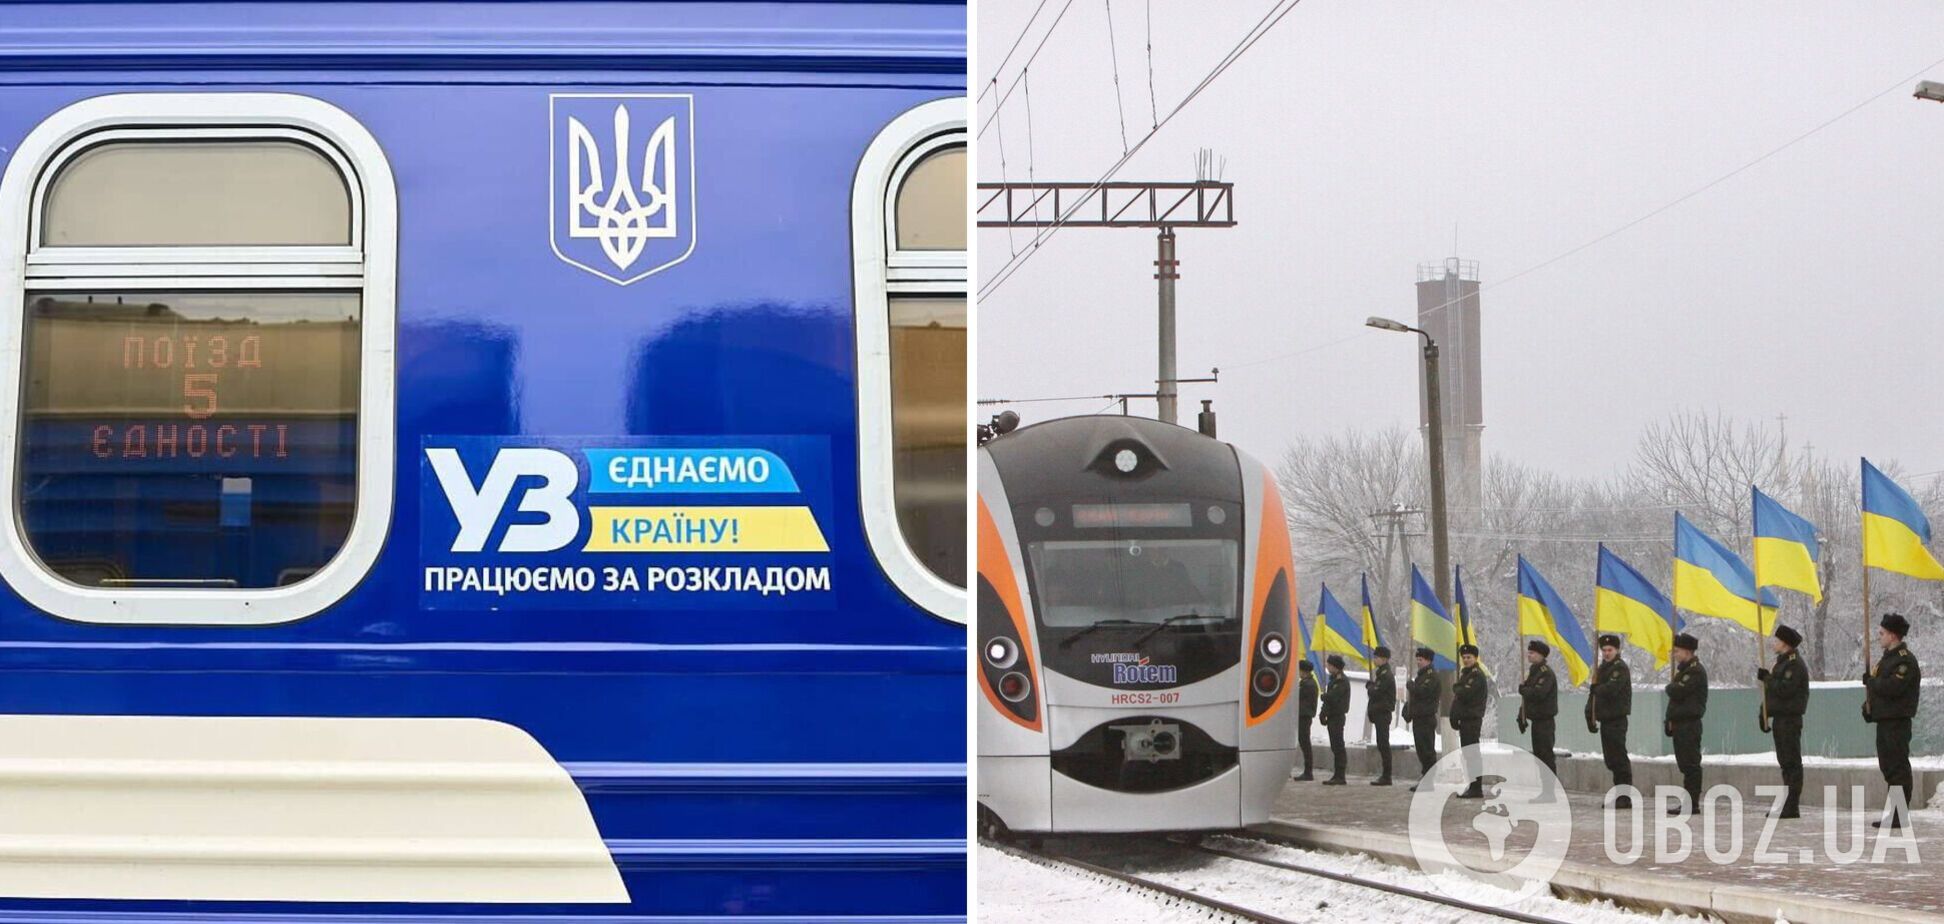 'Укрзалізниця' второй раз запускает 'Поезд единения': проедет 9 областей от Ужгорода до Краматорска